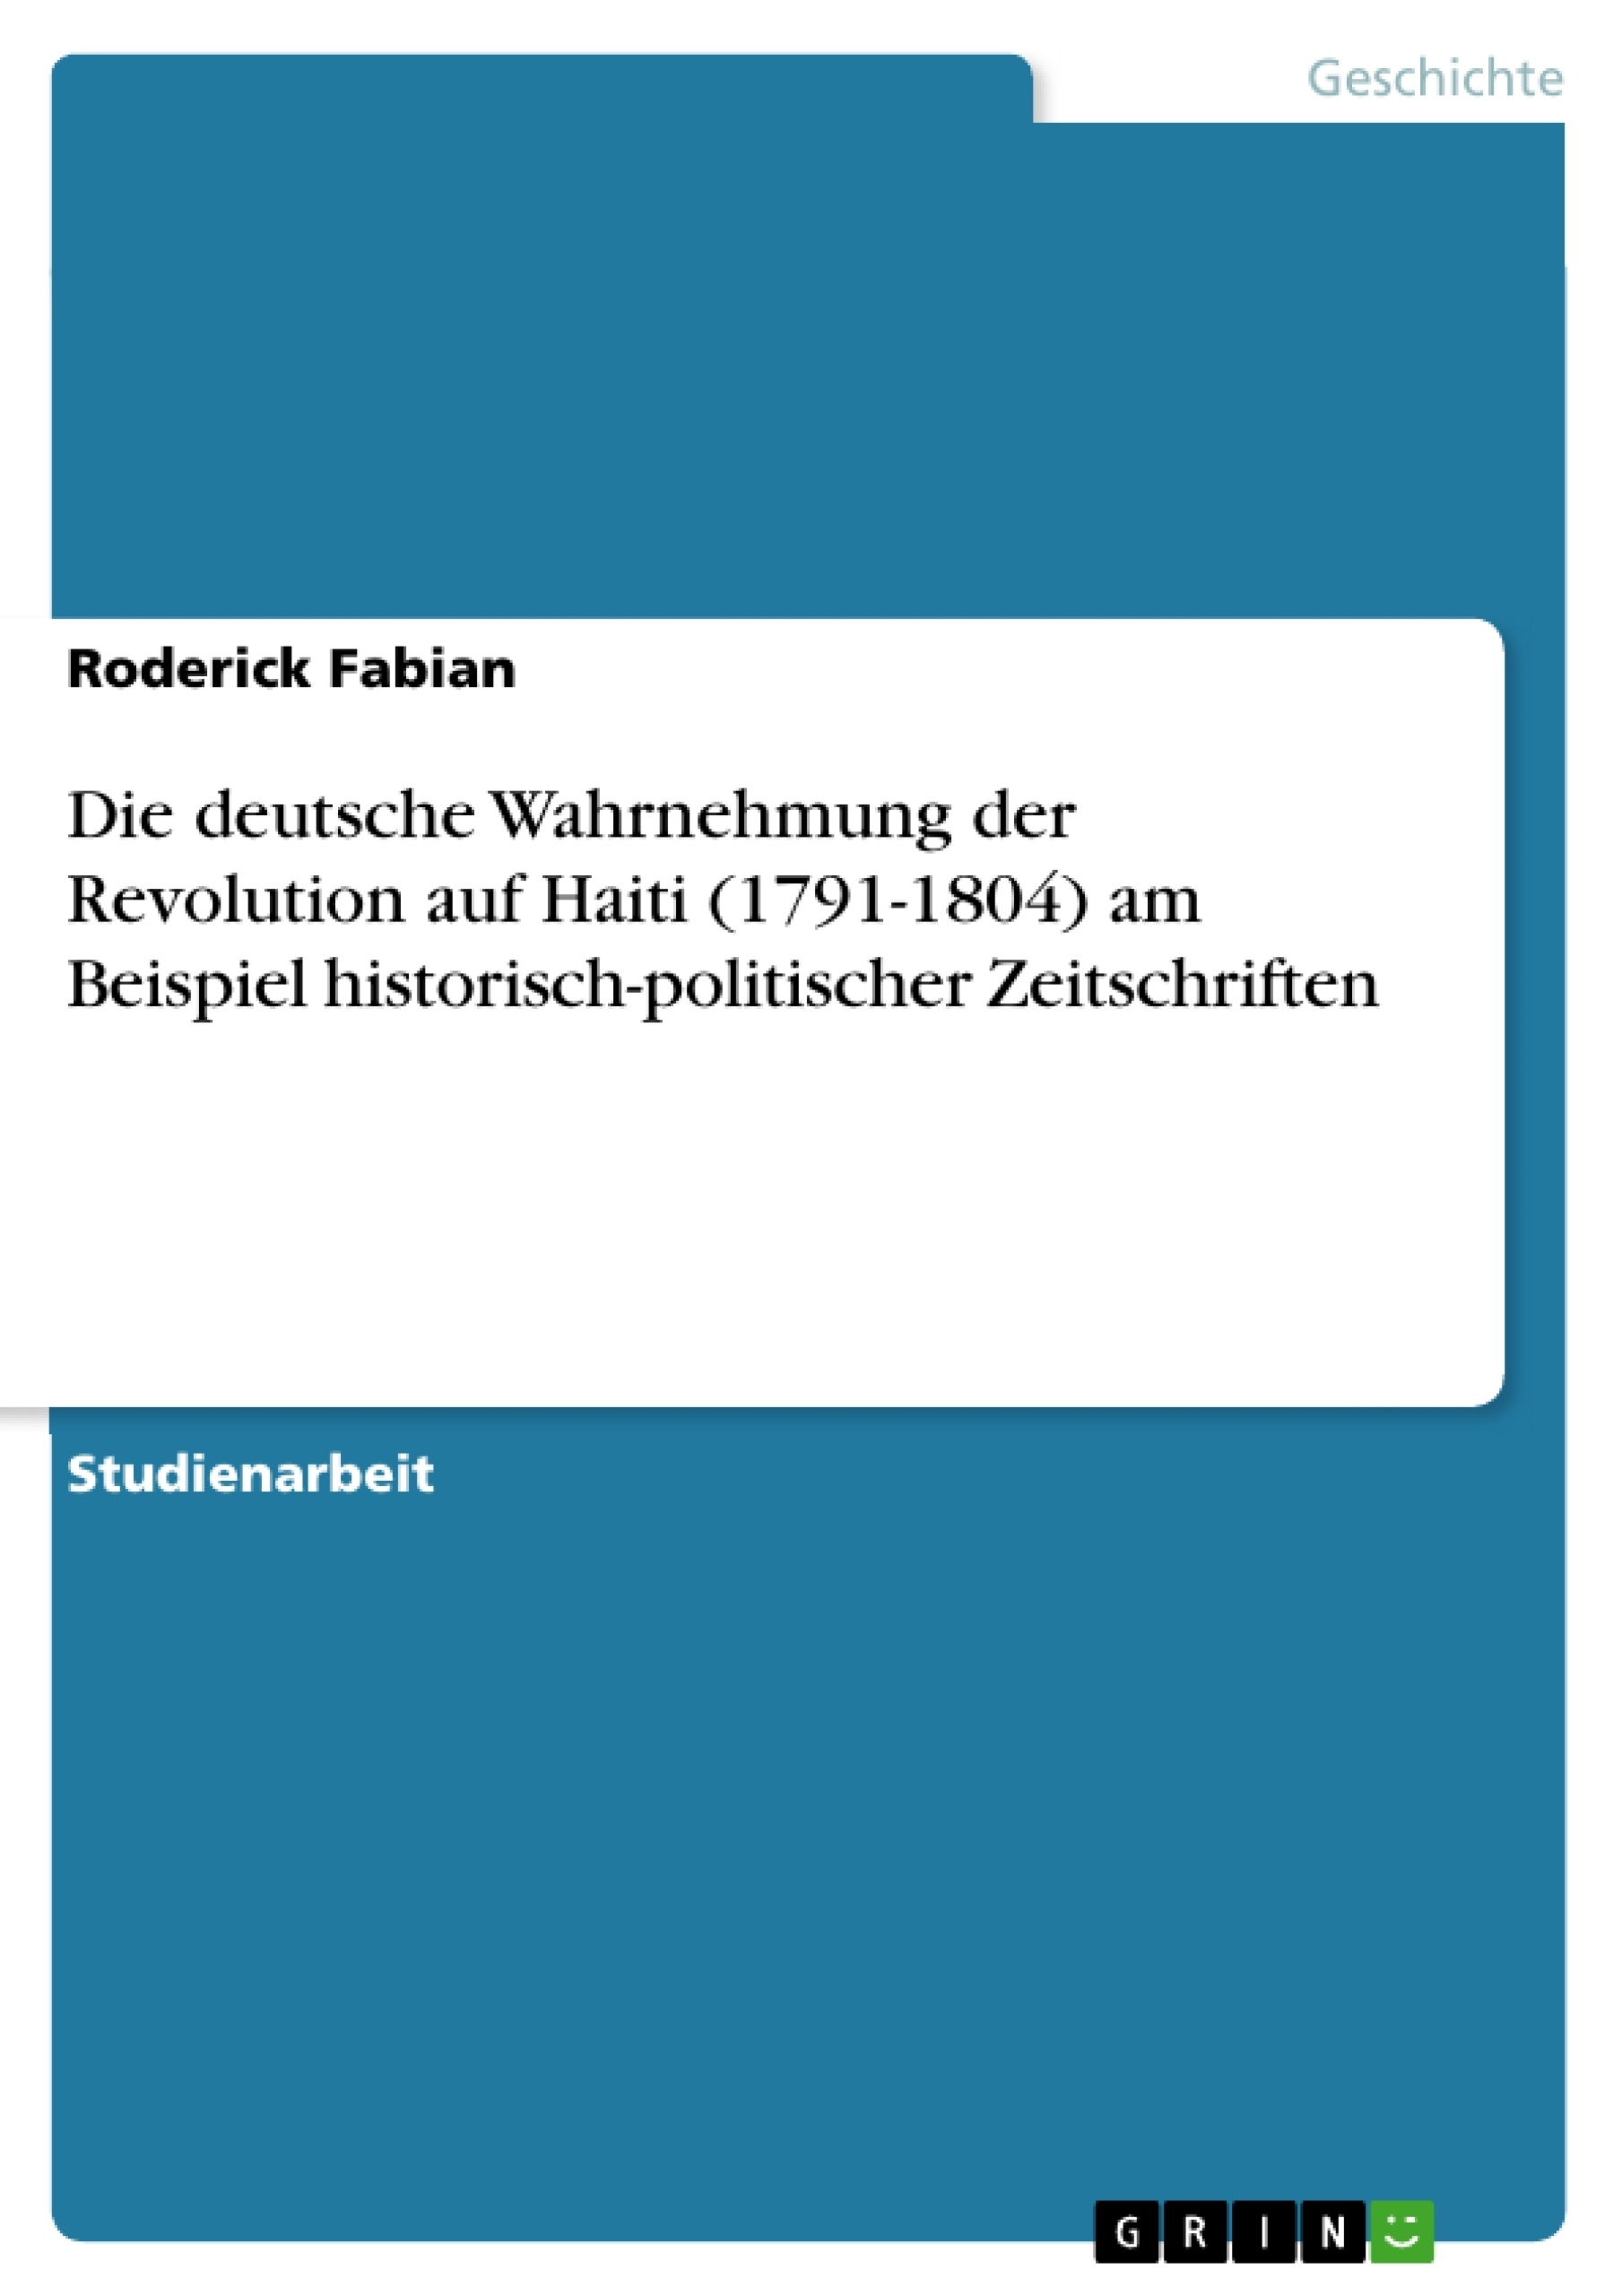 Title: Die deutsche Wahrnehmung der Revolution auf Haiti (1791-1804) am Beispiel historisch-politischer Zeitschriften